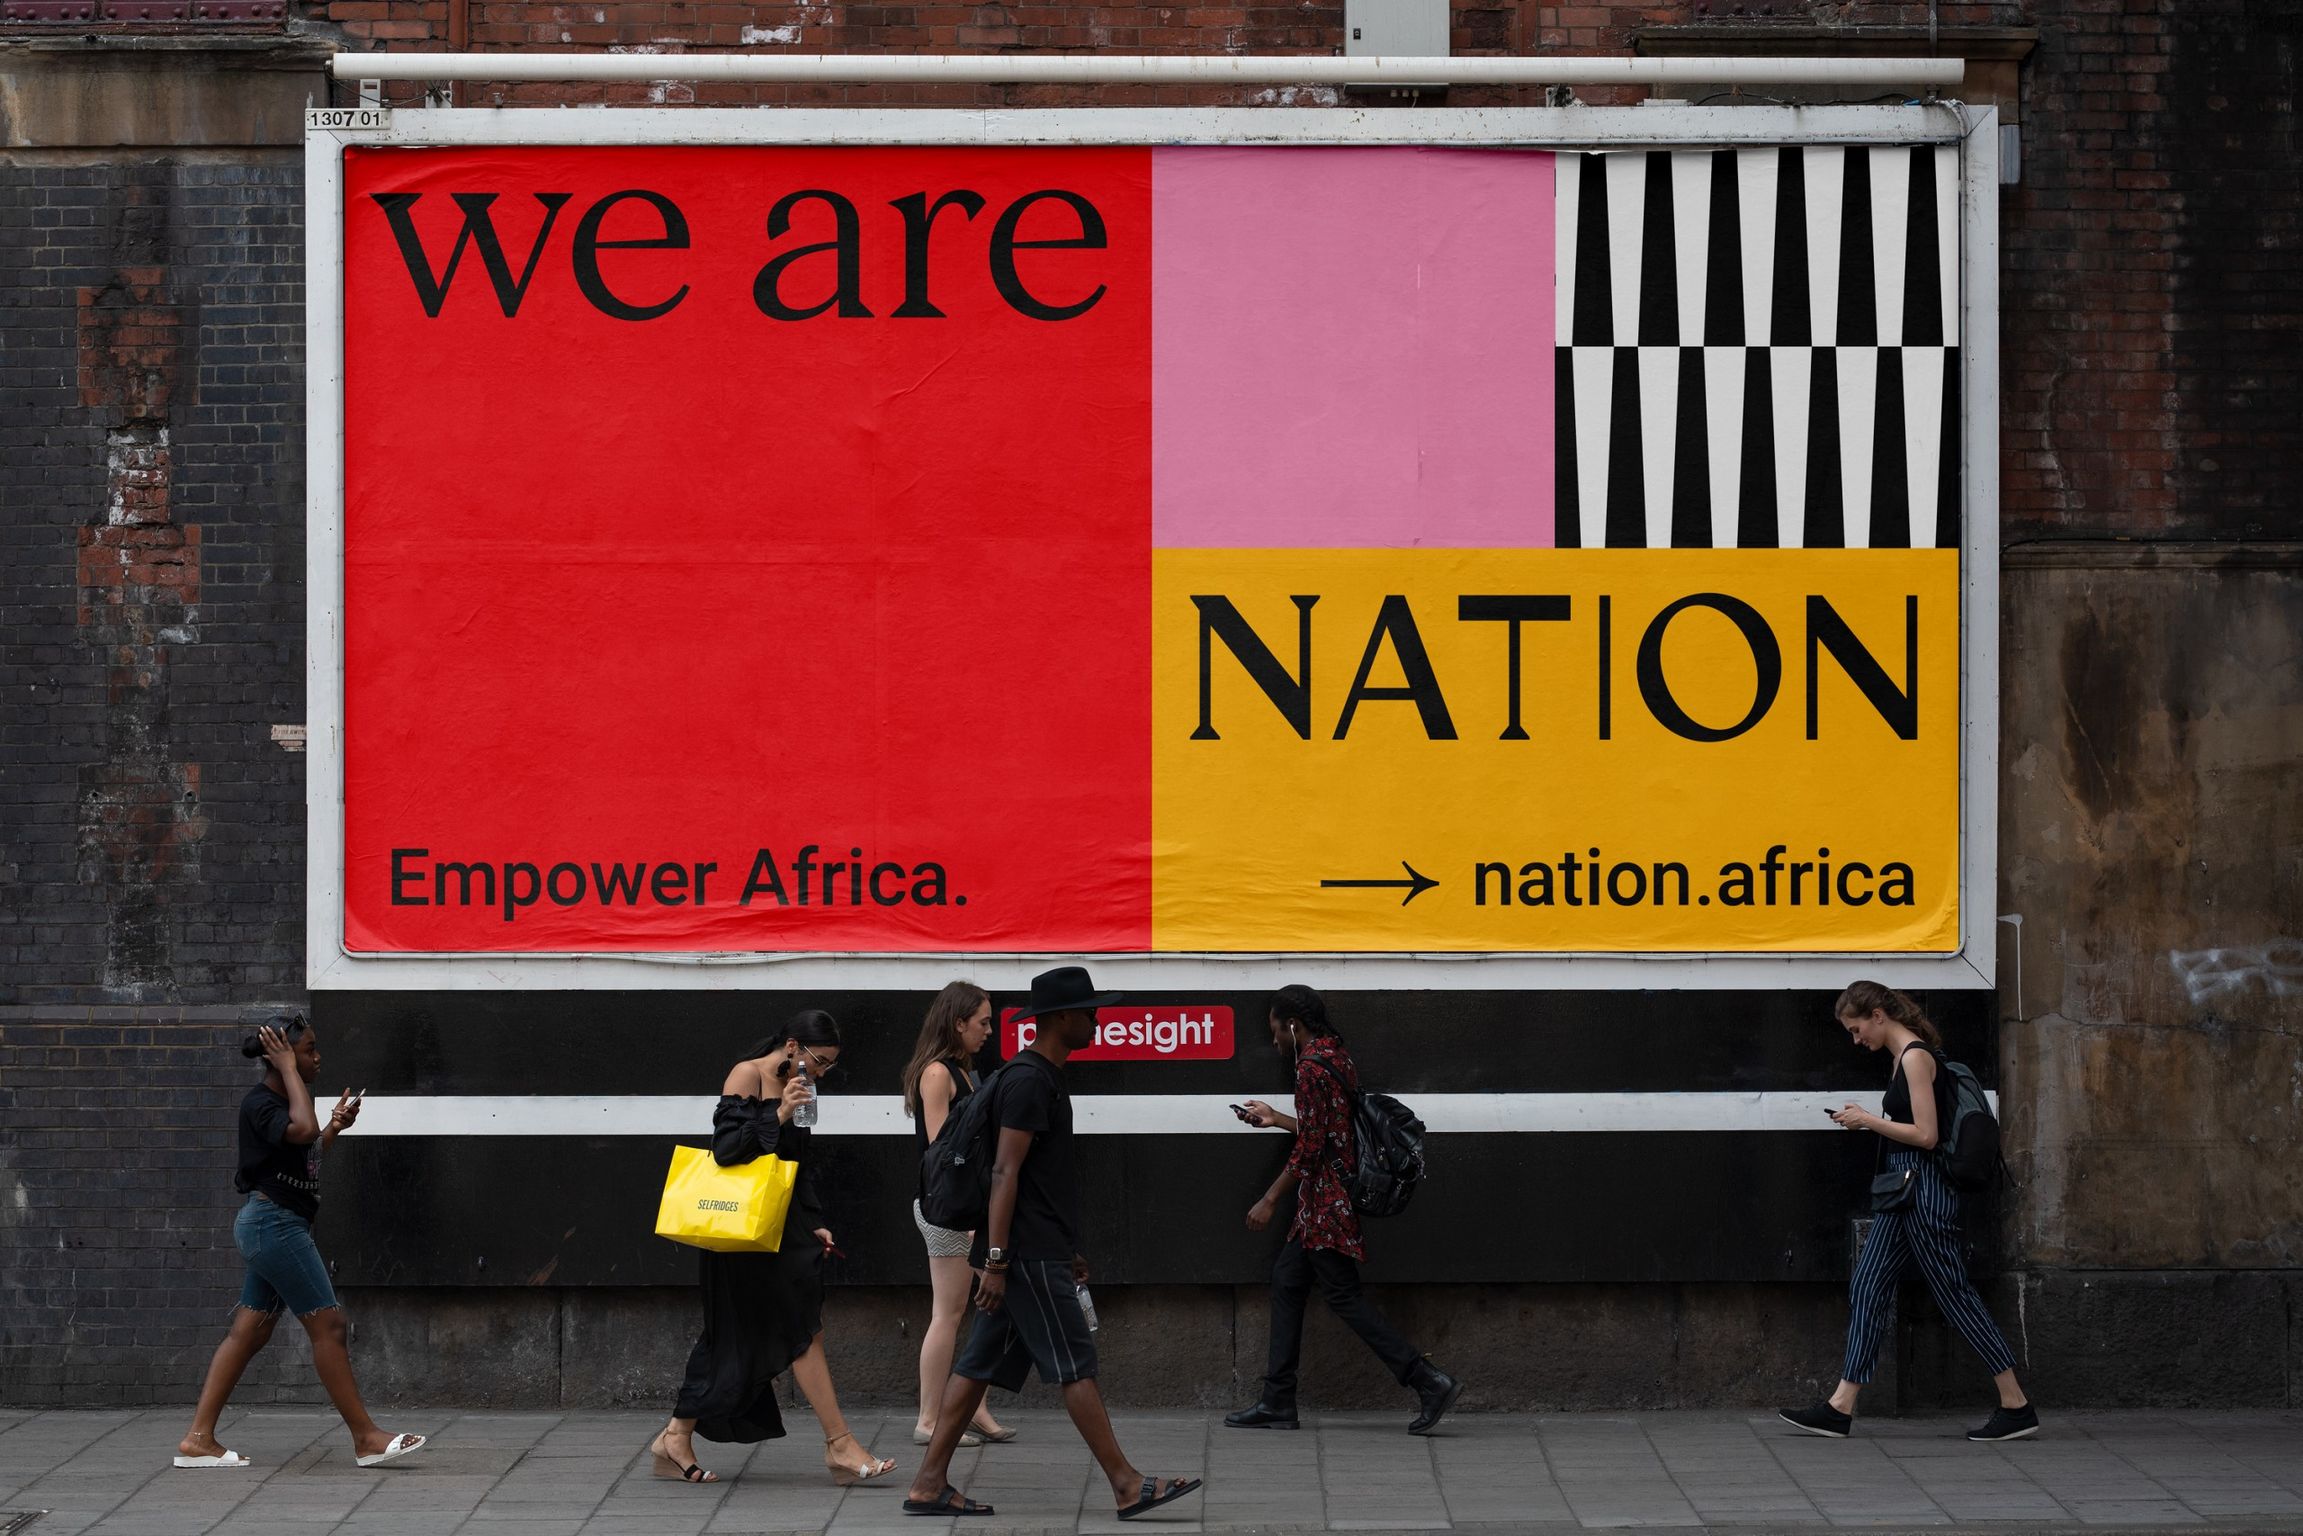 Nation. Empower Africa.